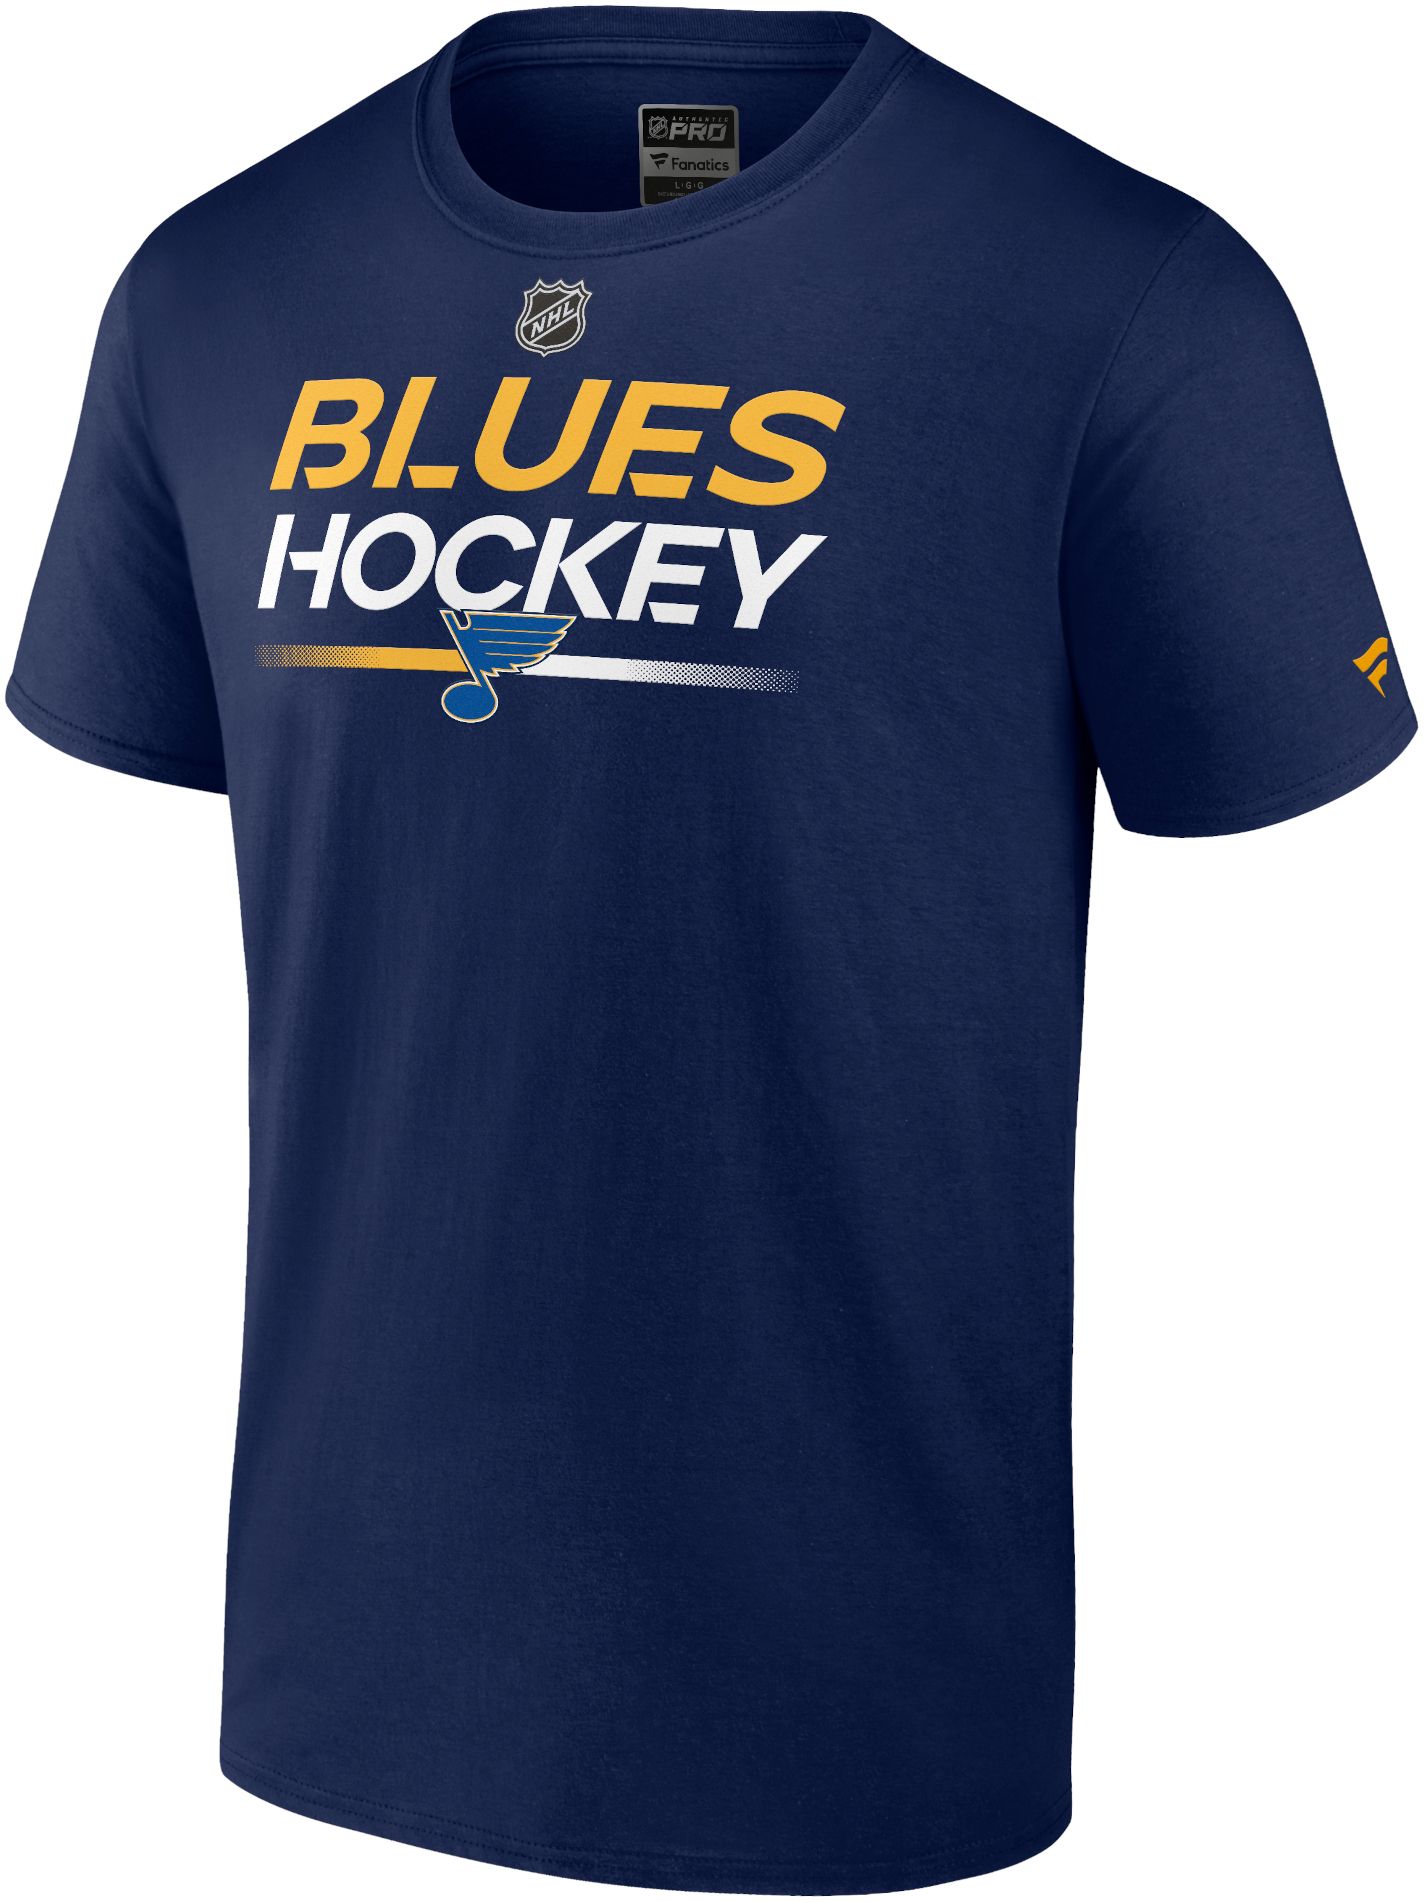 blues hockey gear